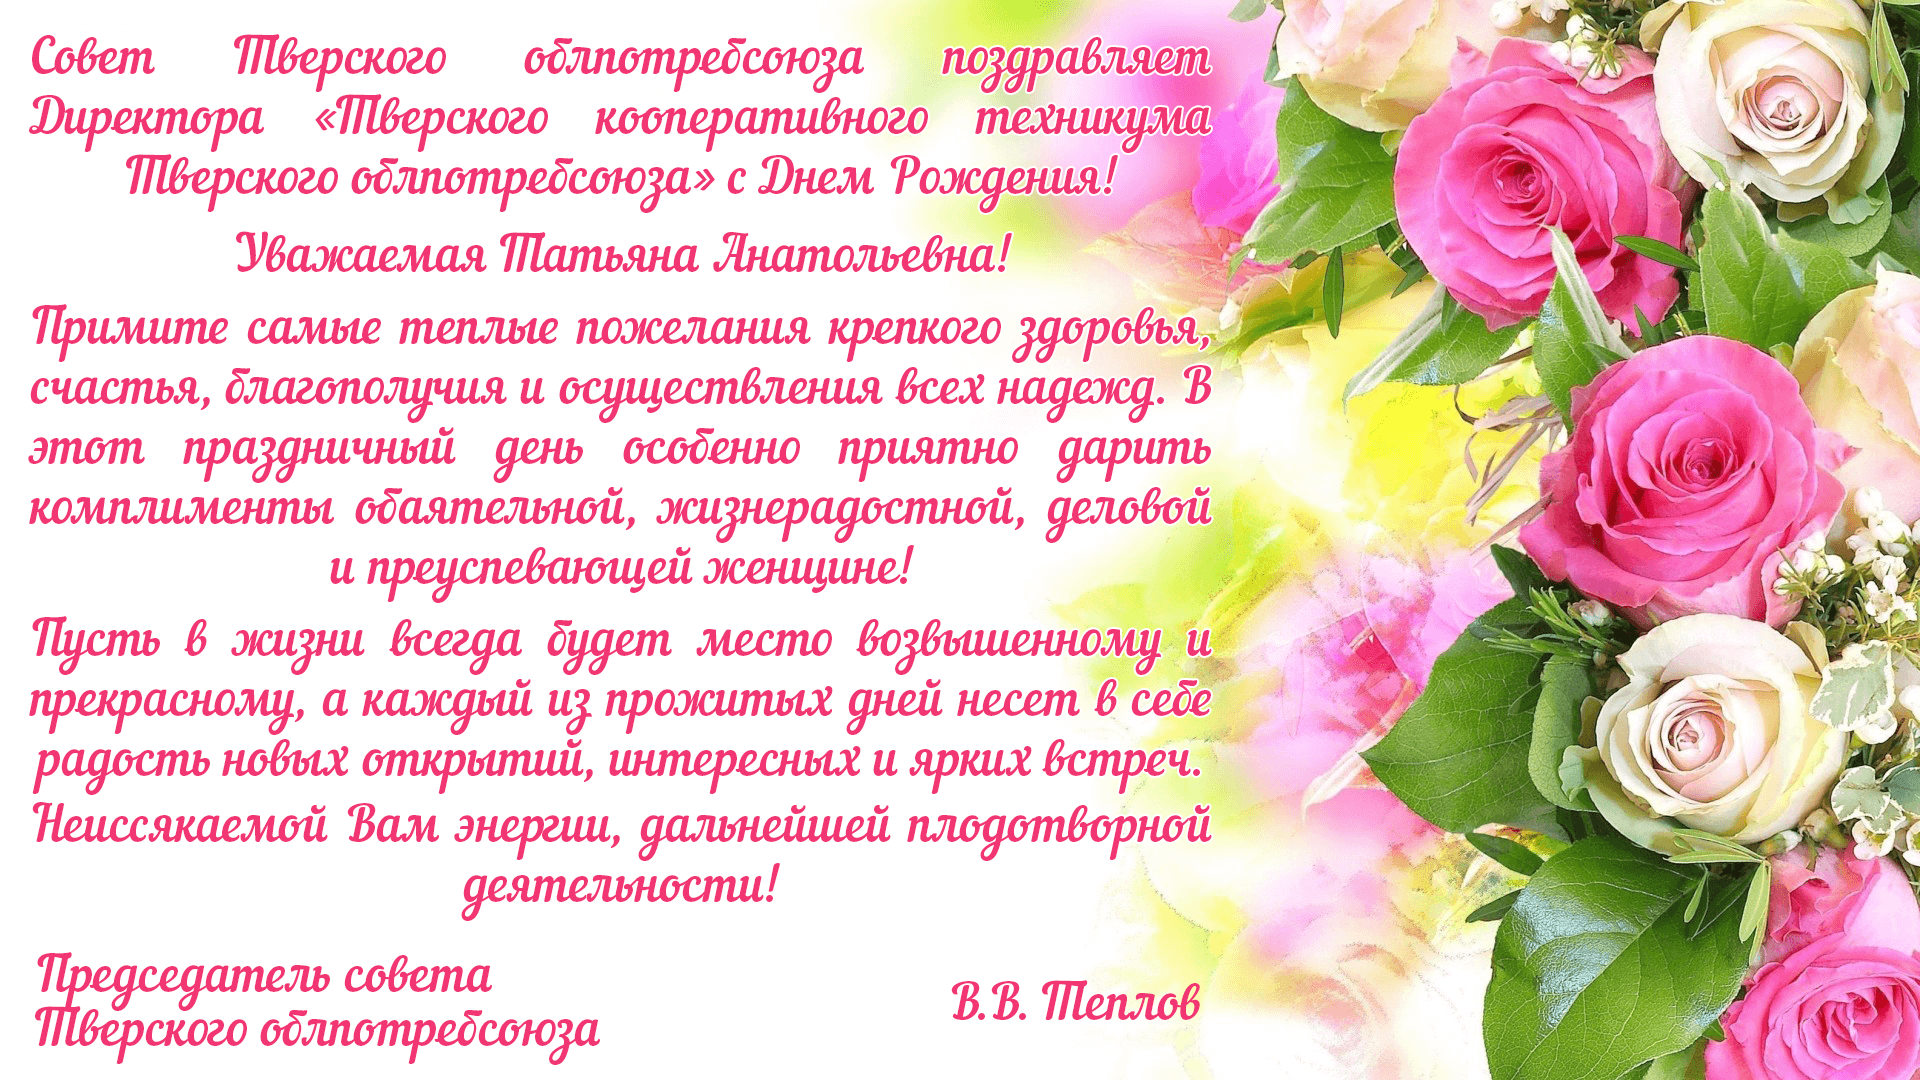 Поздравляем нашего директора - М.Д.Афанасьева - с юбилеем!